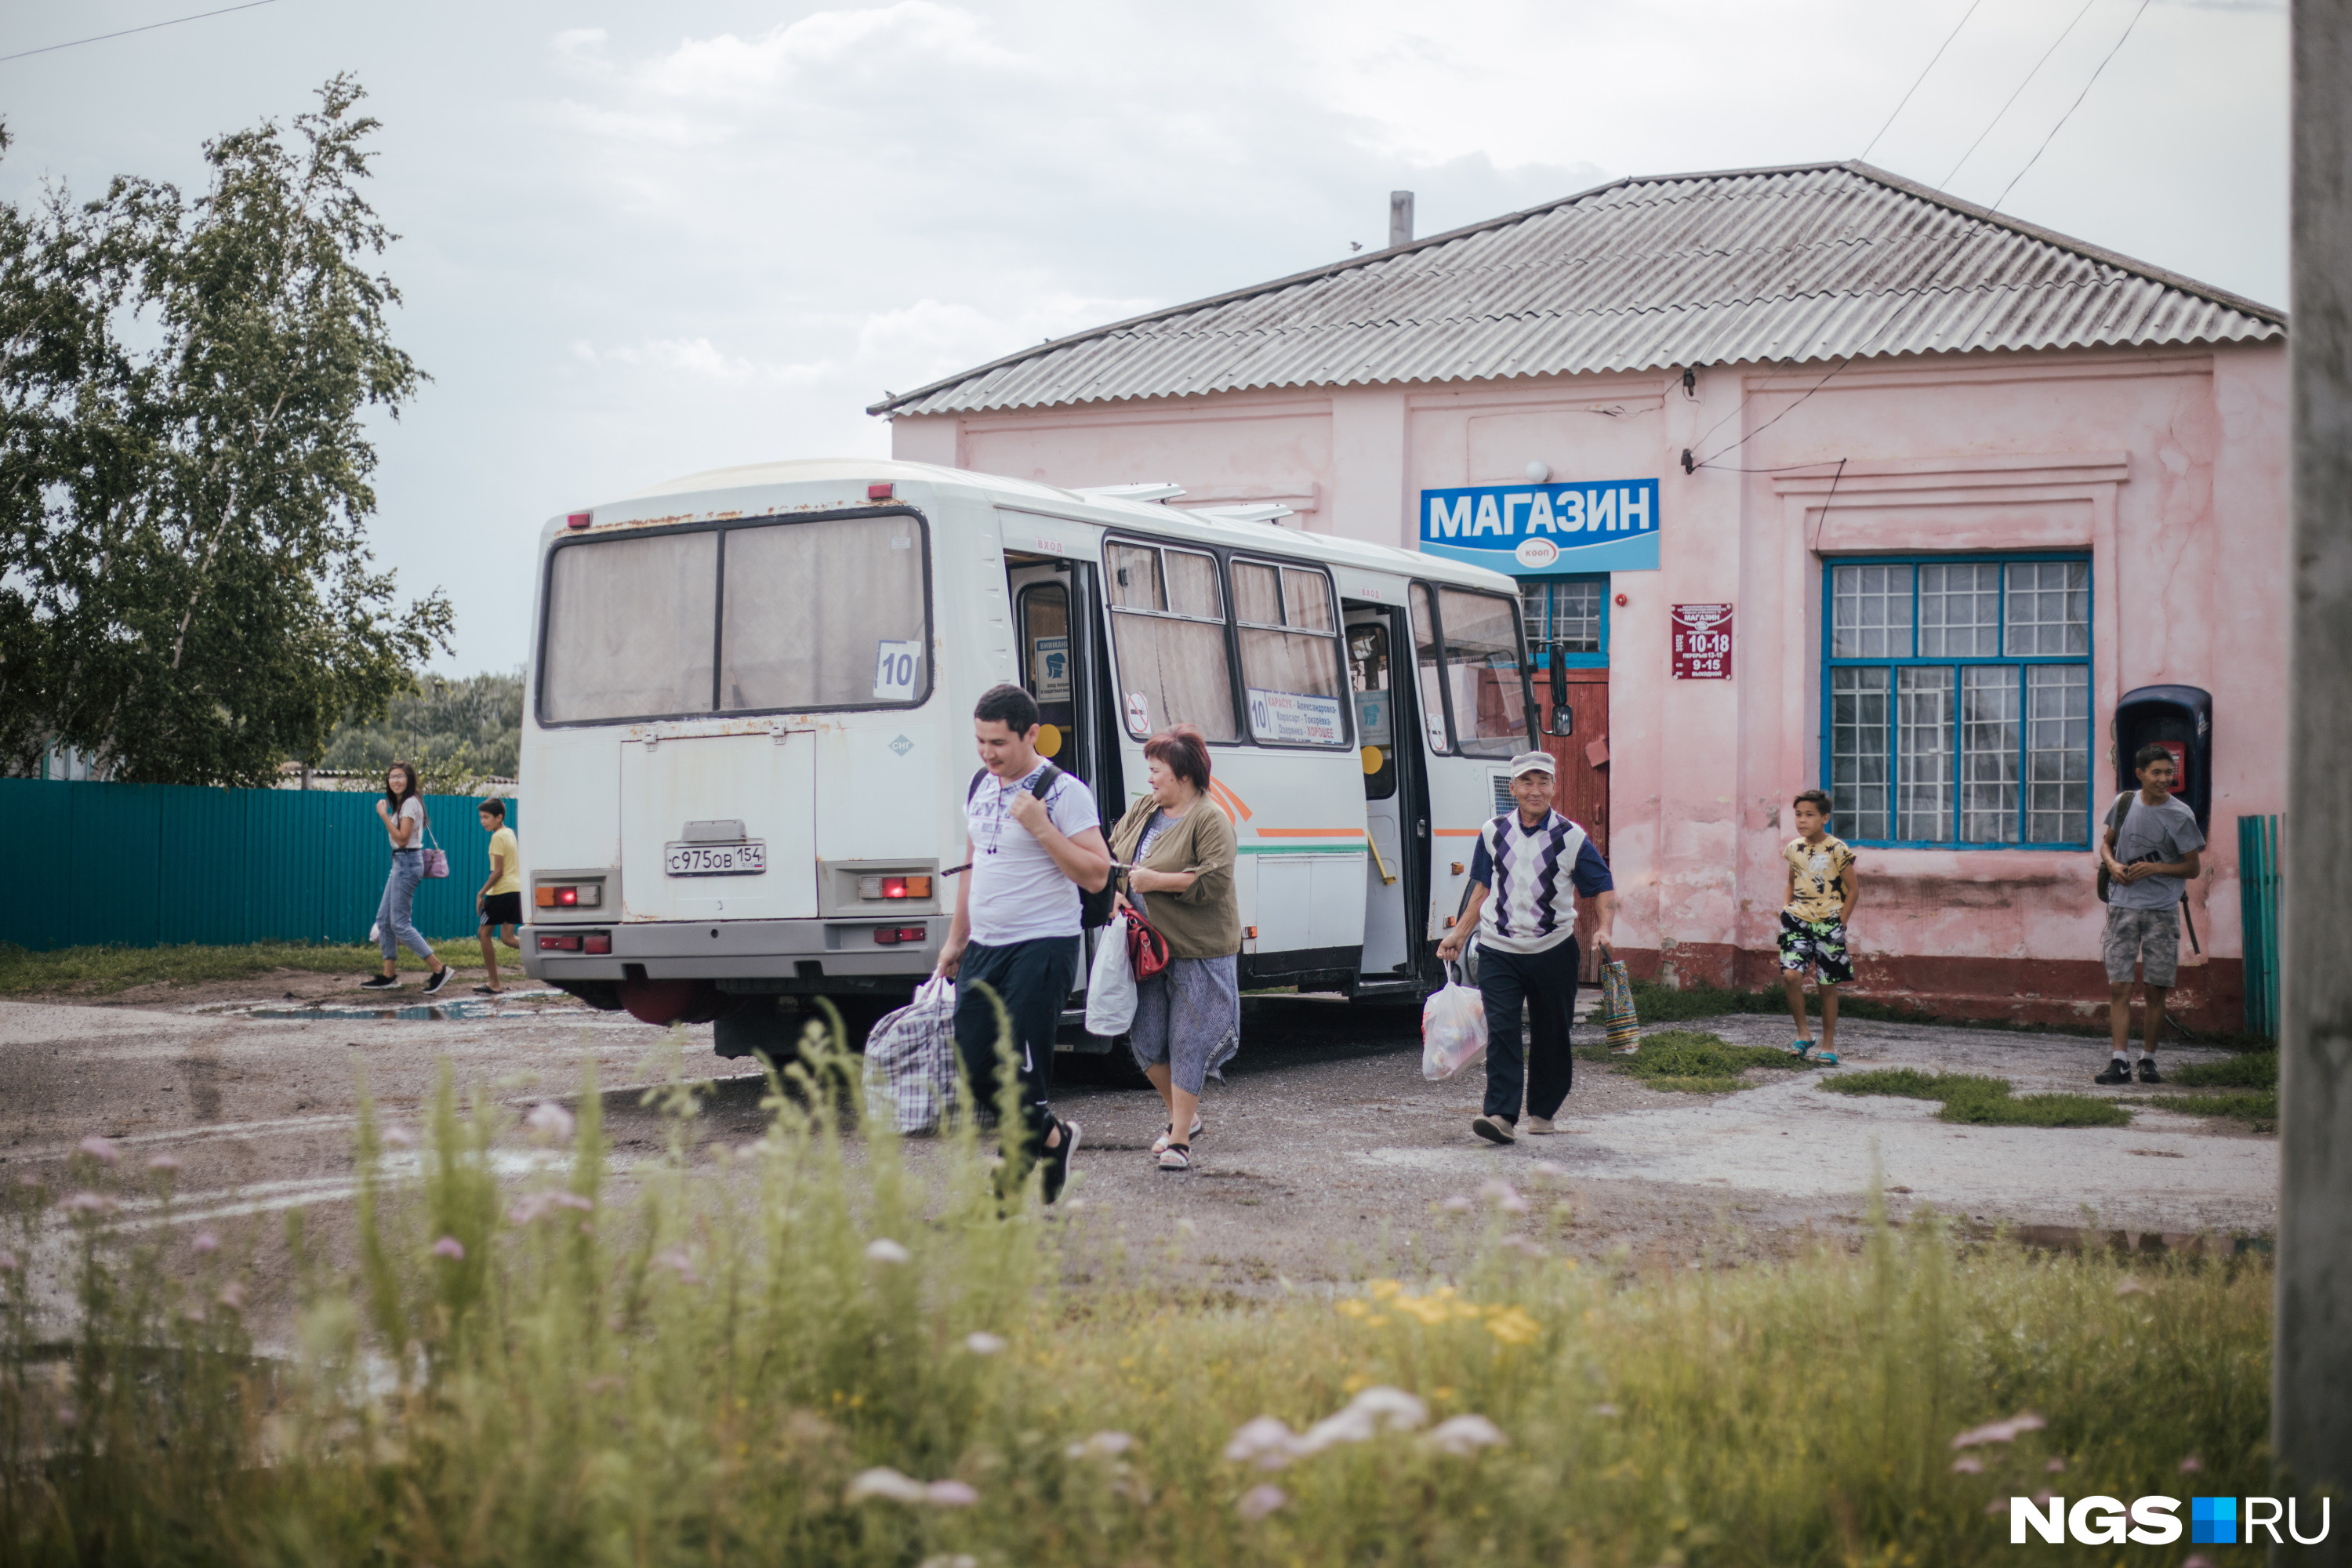 Когда-то в Карасарт приезжали специально ради учебы в школе — обучение велось в том числе на казахском языке. Теперь из аула всё чаще выезжают